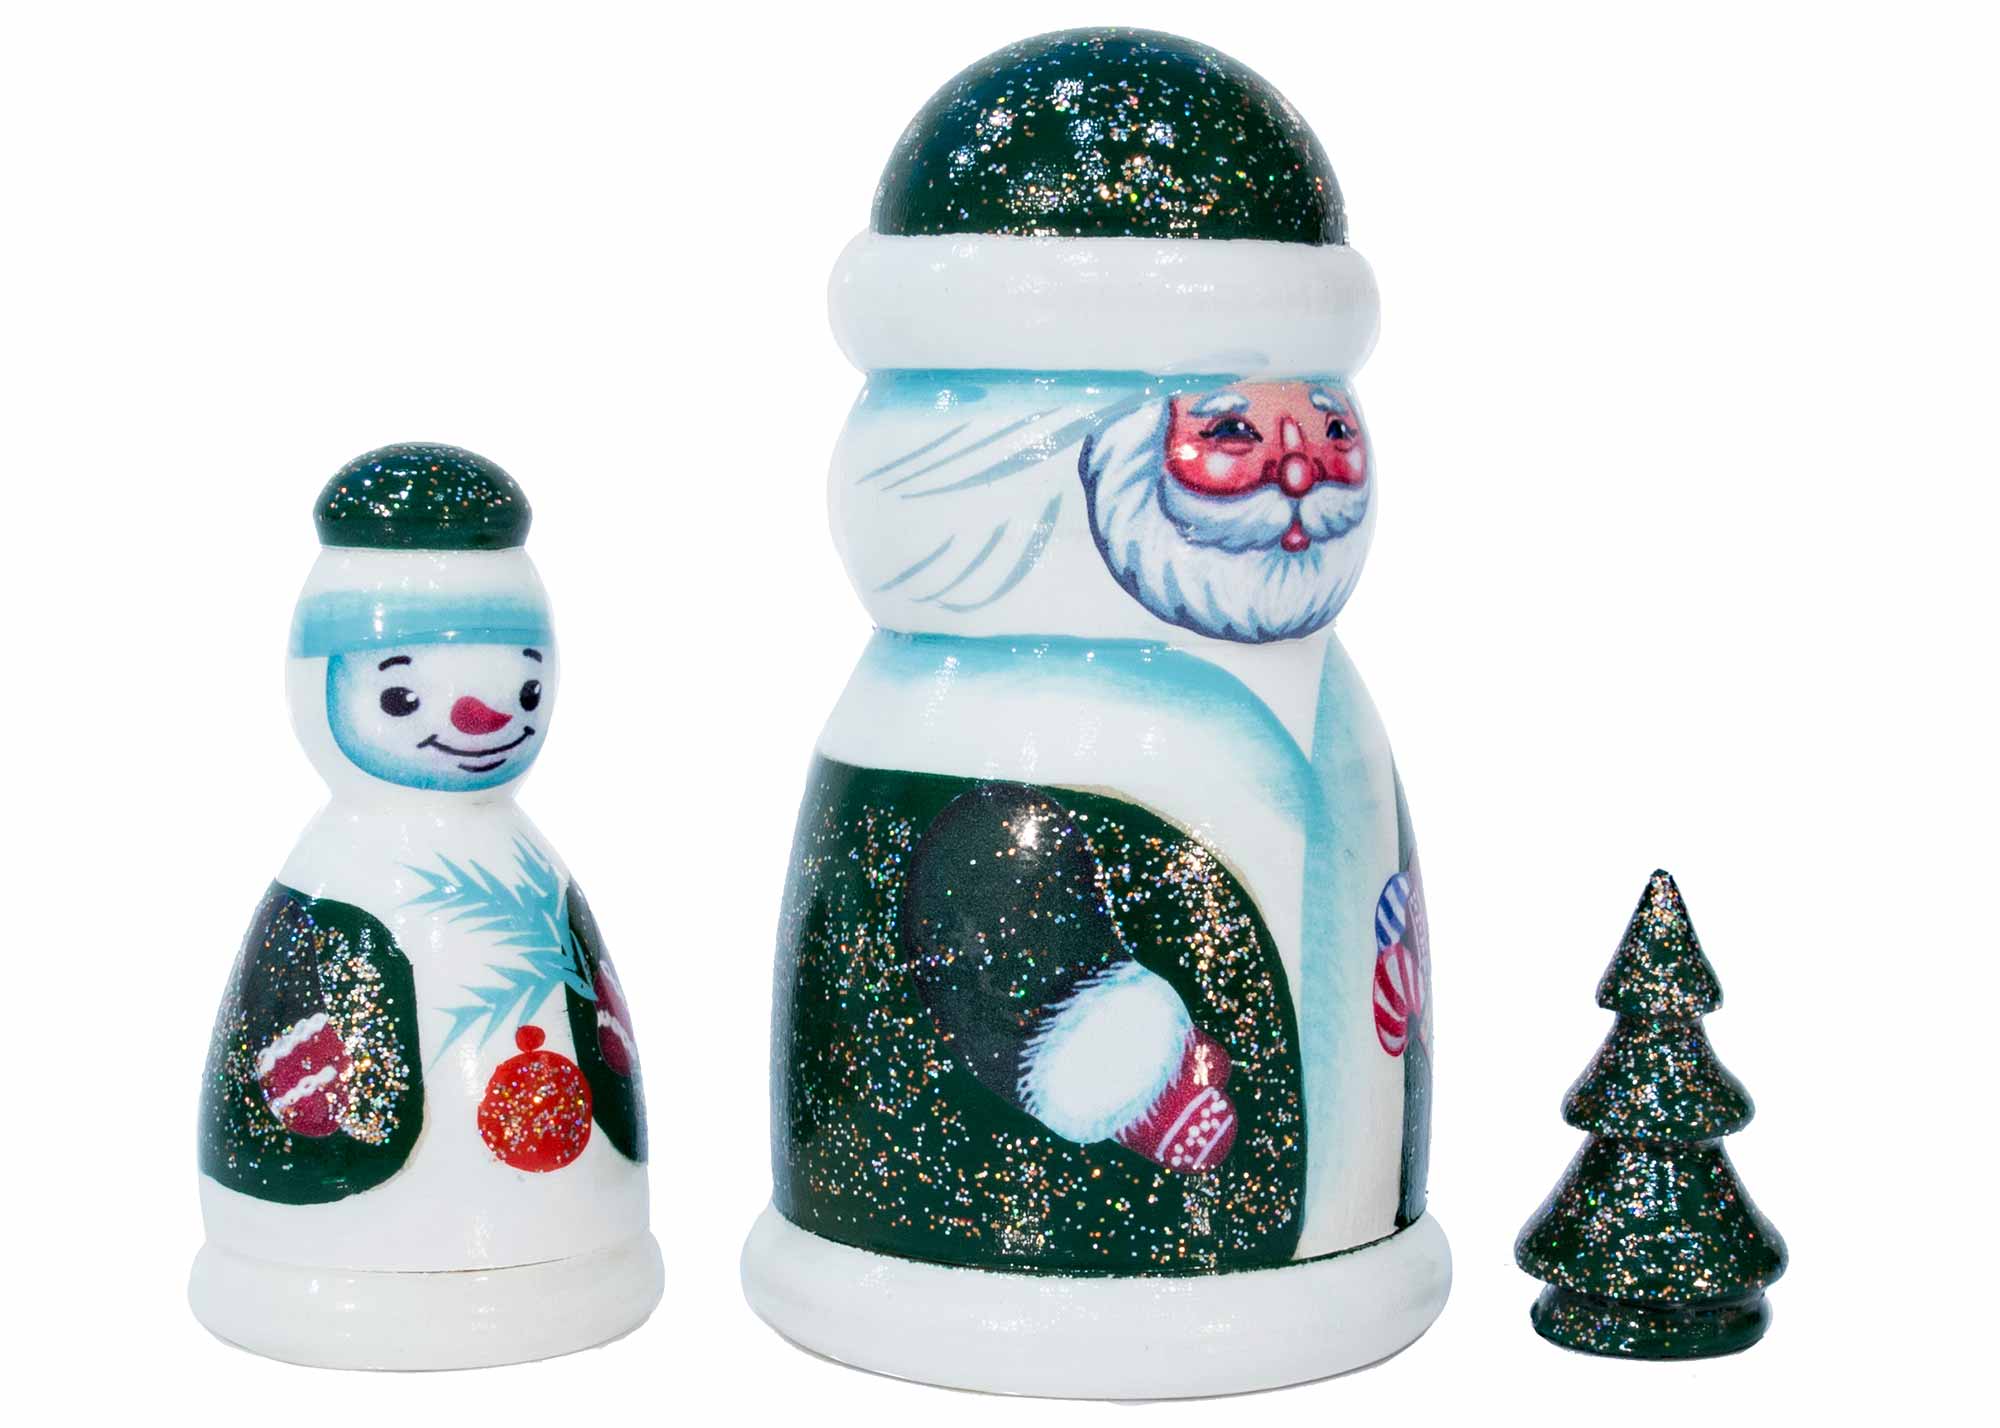 Buy Irish Santa w/ Snowman Nesting Doll 3 pc. 4” at GoldenCockerel.com